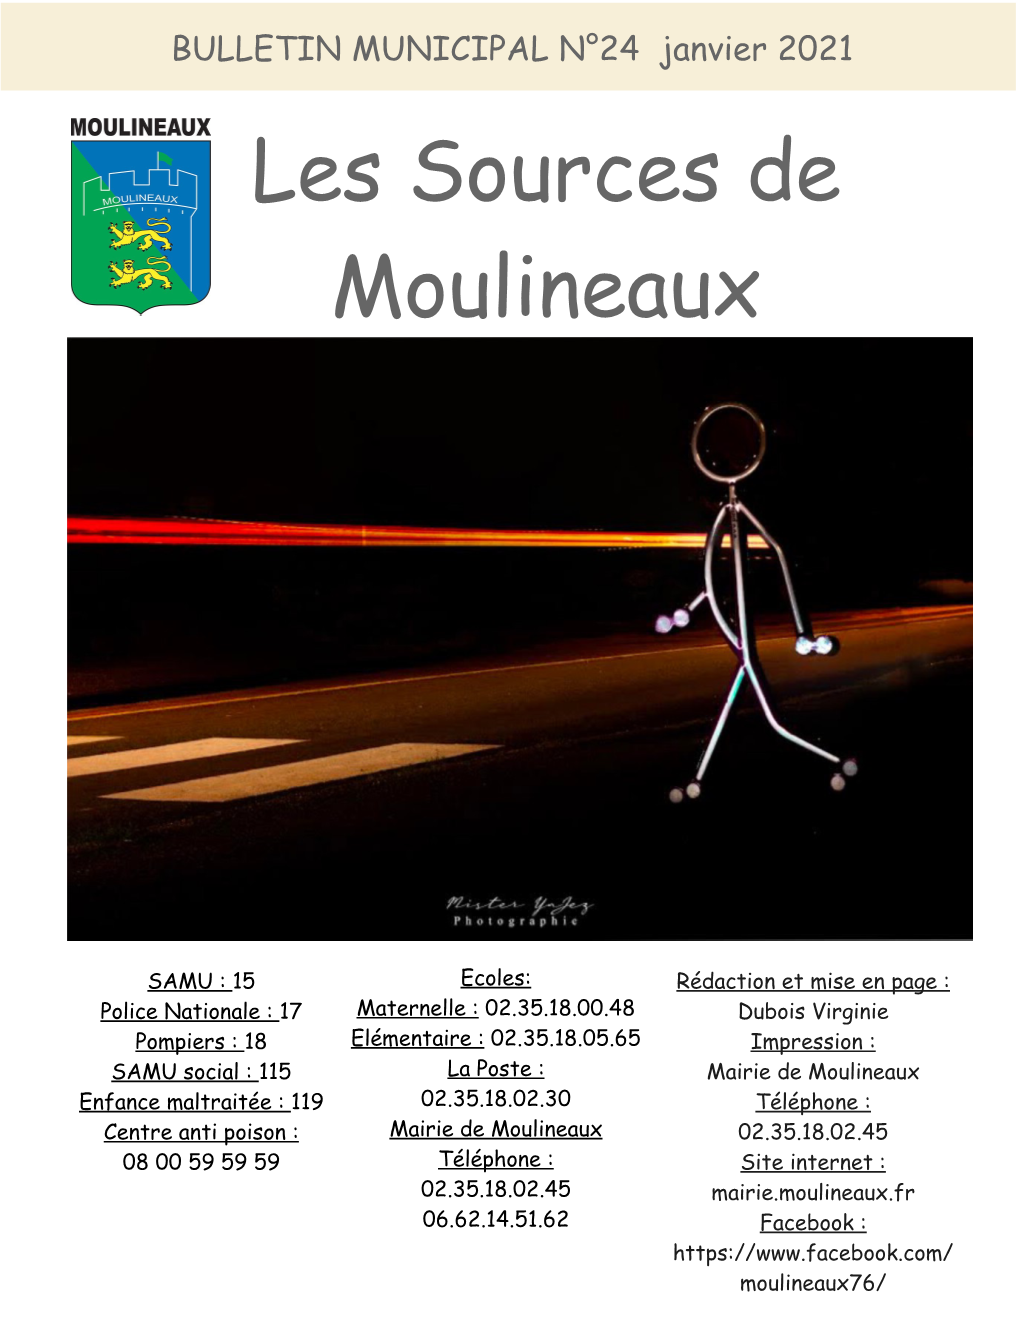 BULLETIN MUNICIPAL N°24 Janvier 2021 Les Sources De Moulineaux